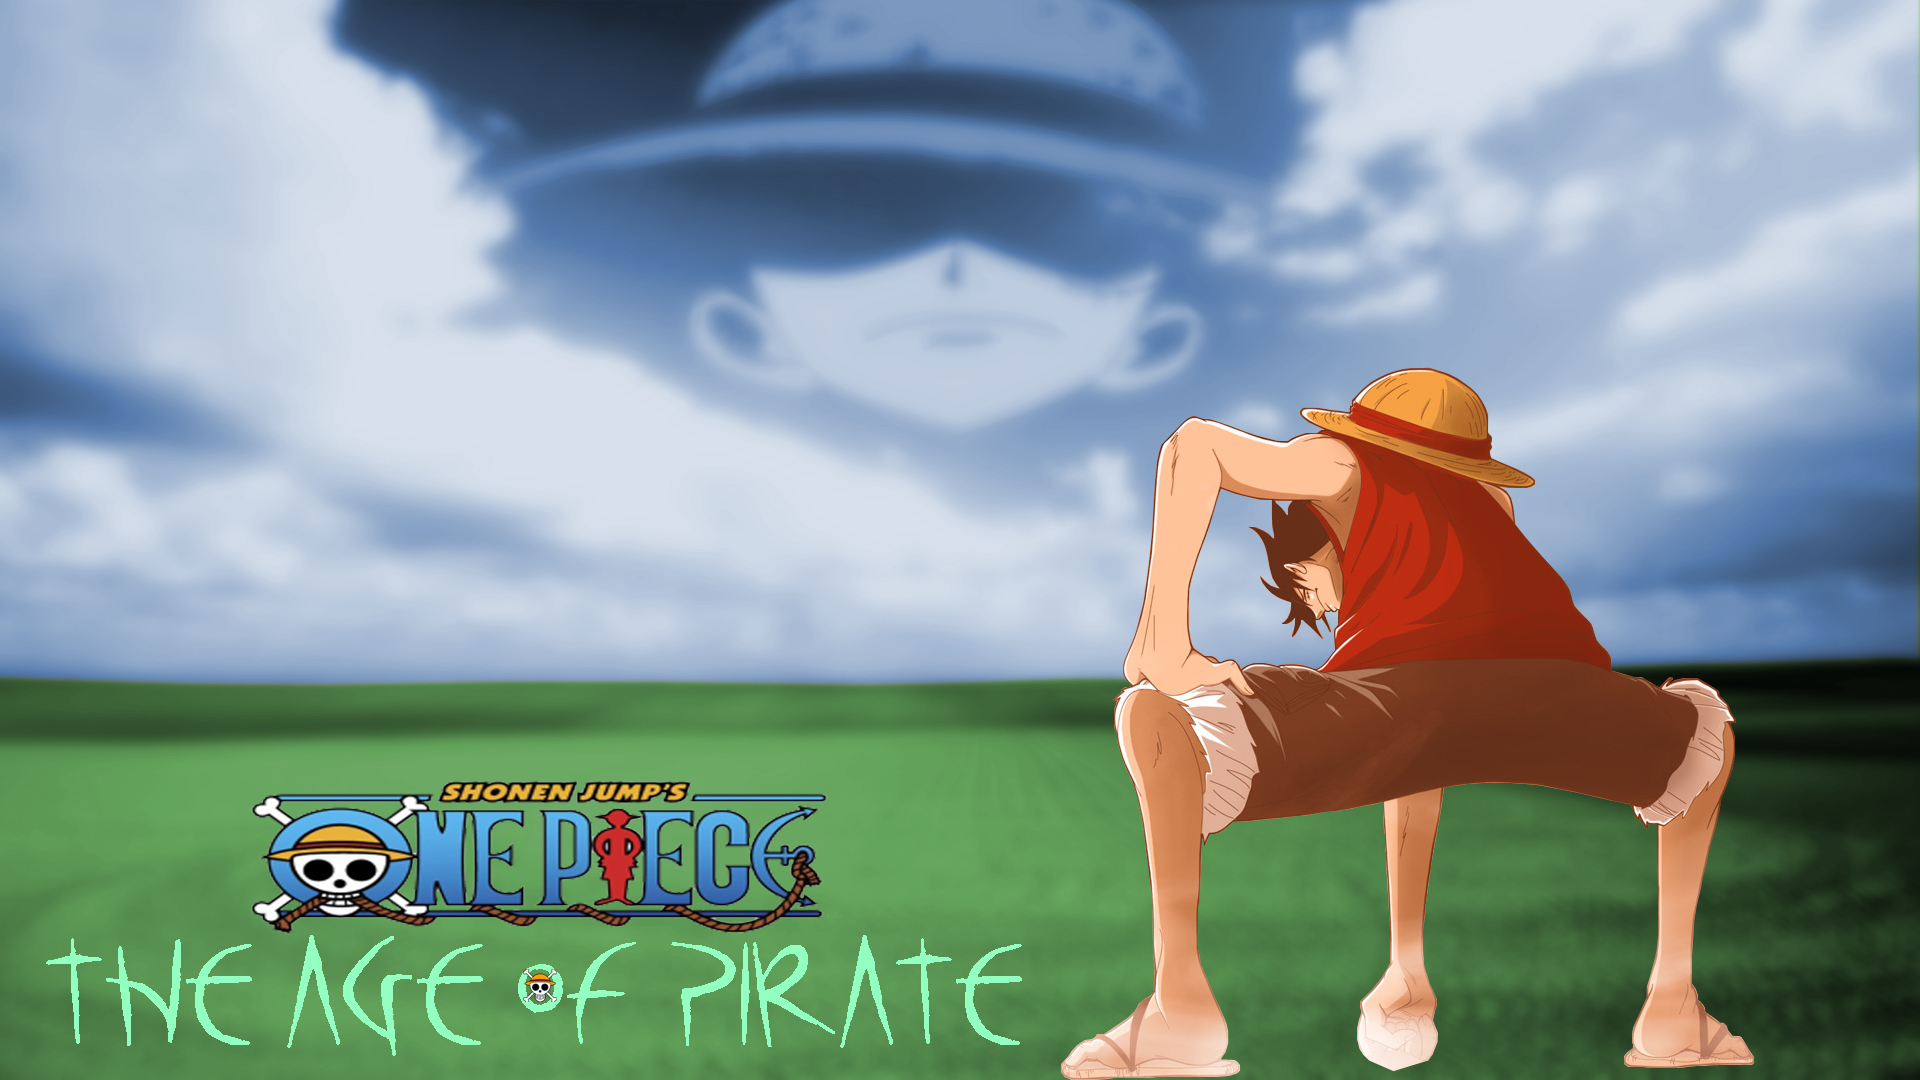 Fond d'ecran Age of pirate